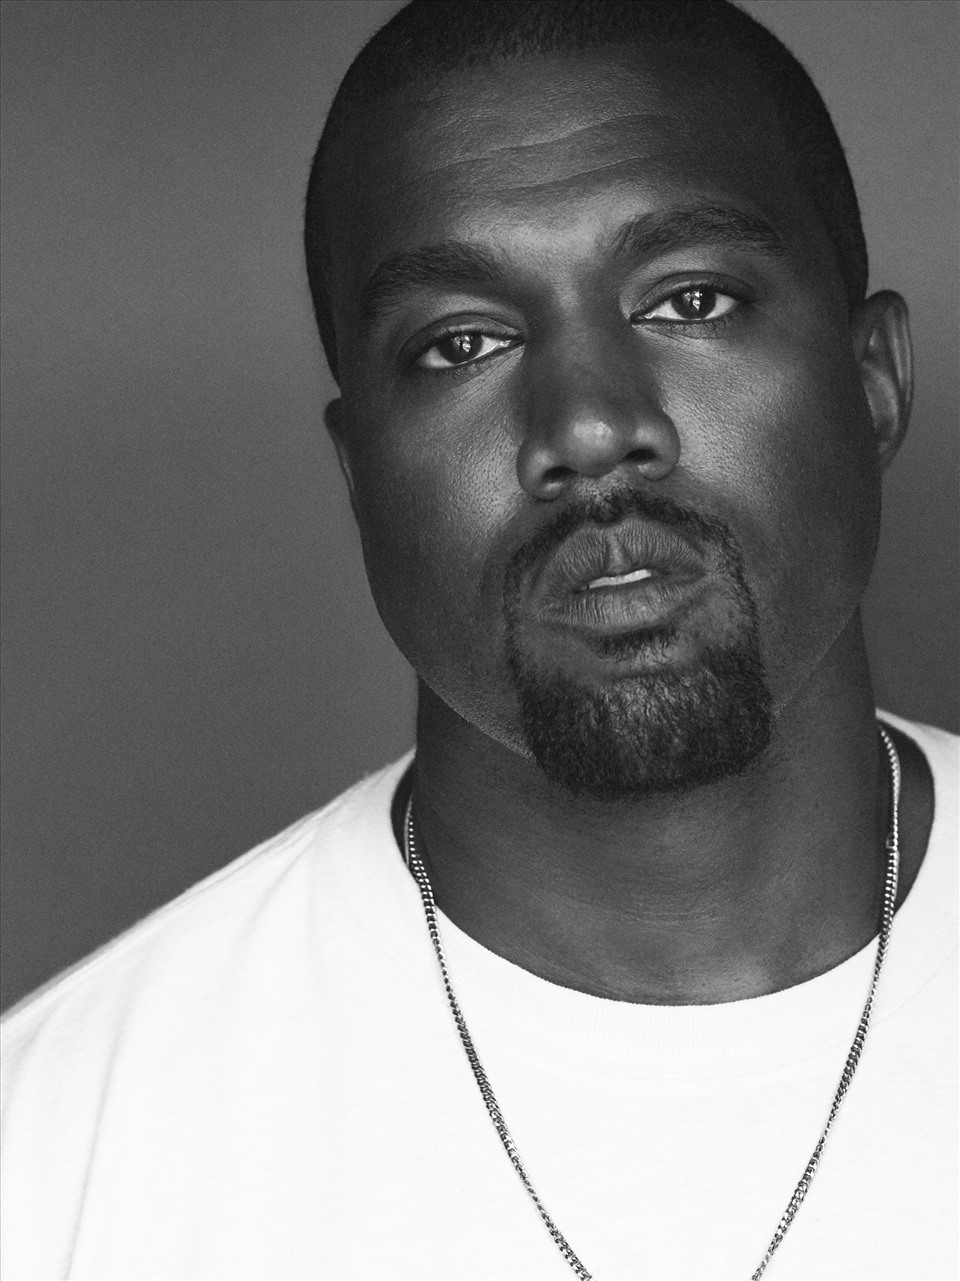 Tỉ phú Kanye West bị đồng nghiệp xa lánh, khán giả tẩy chay vì